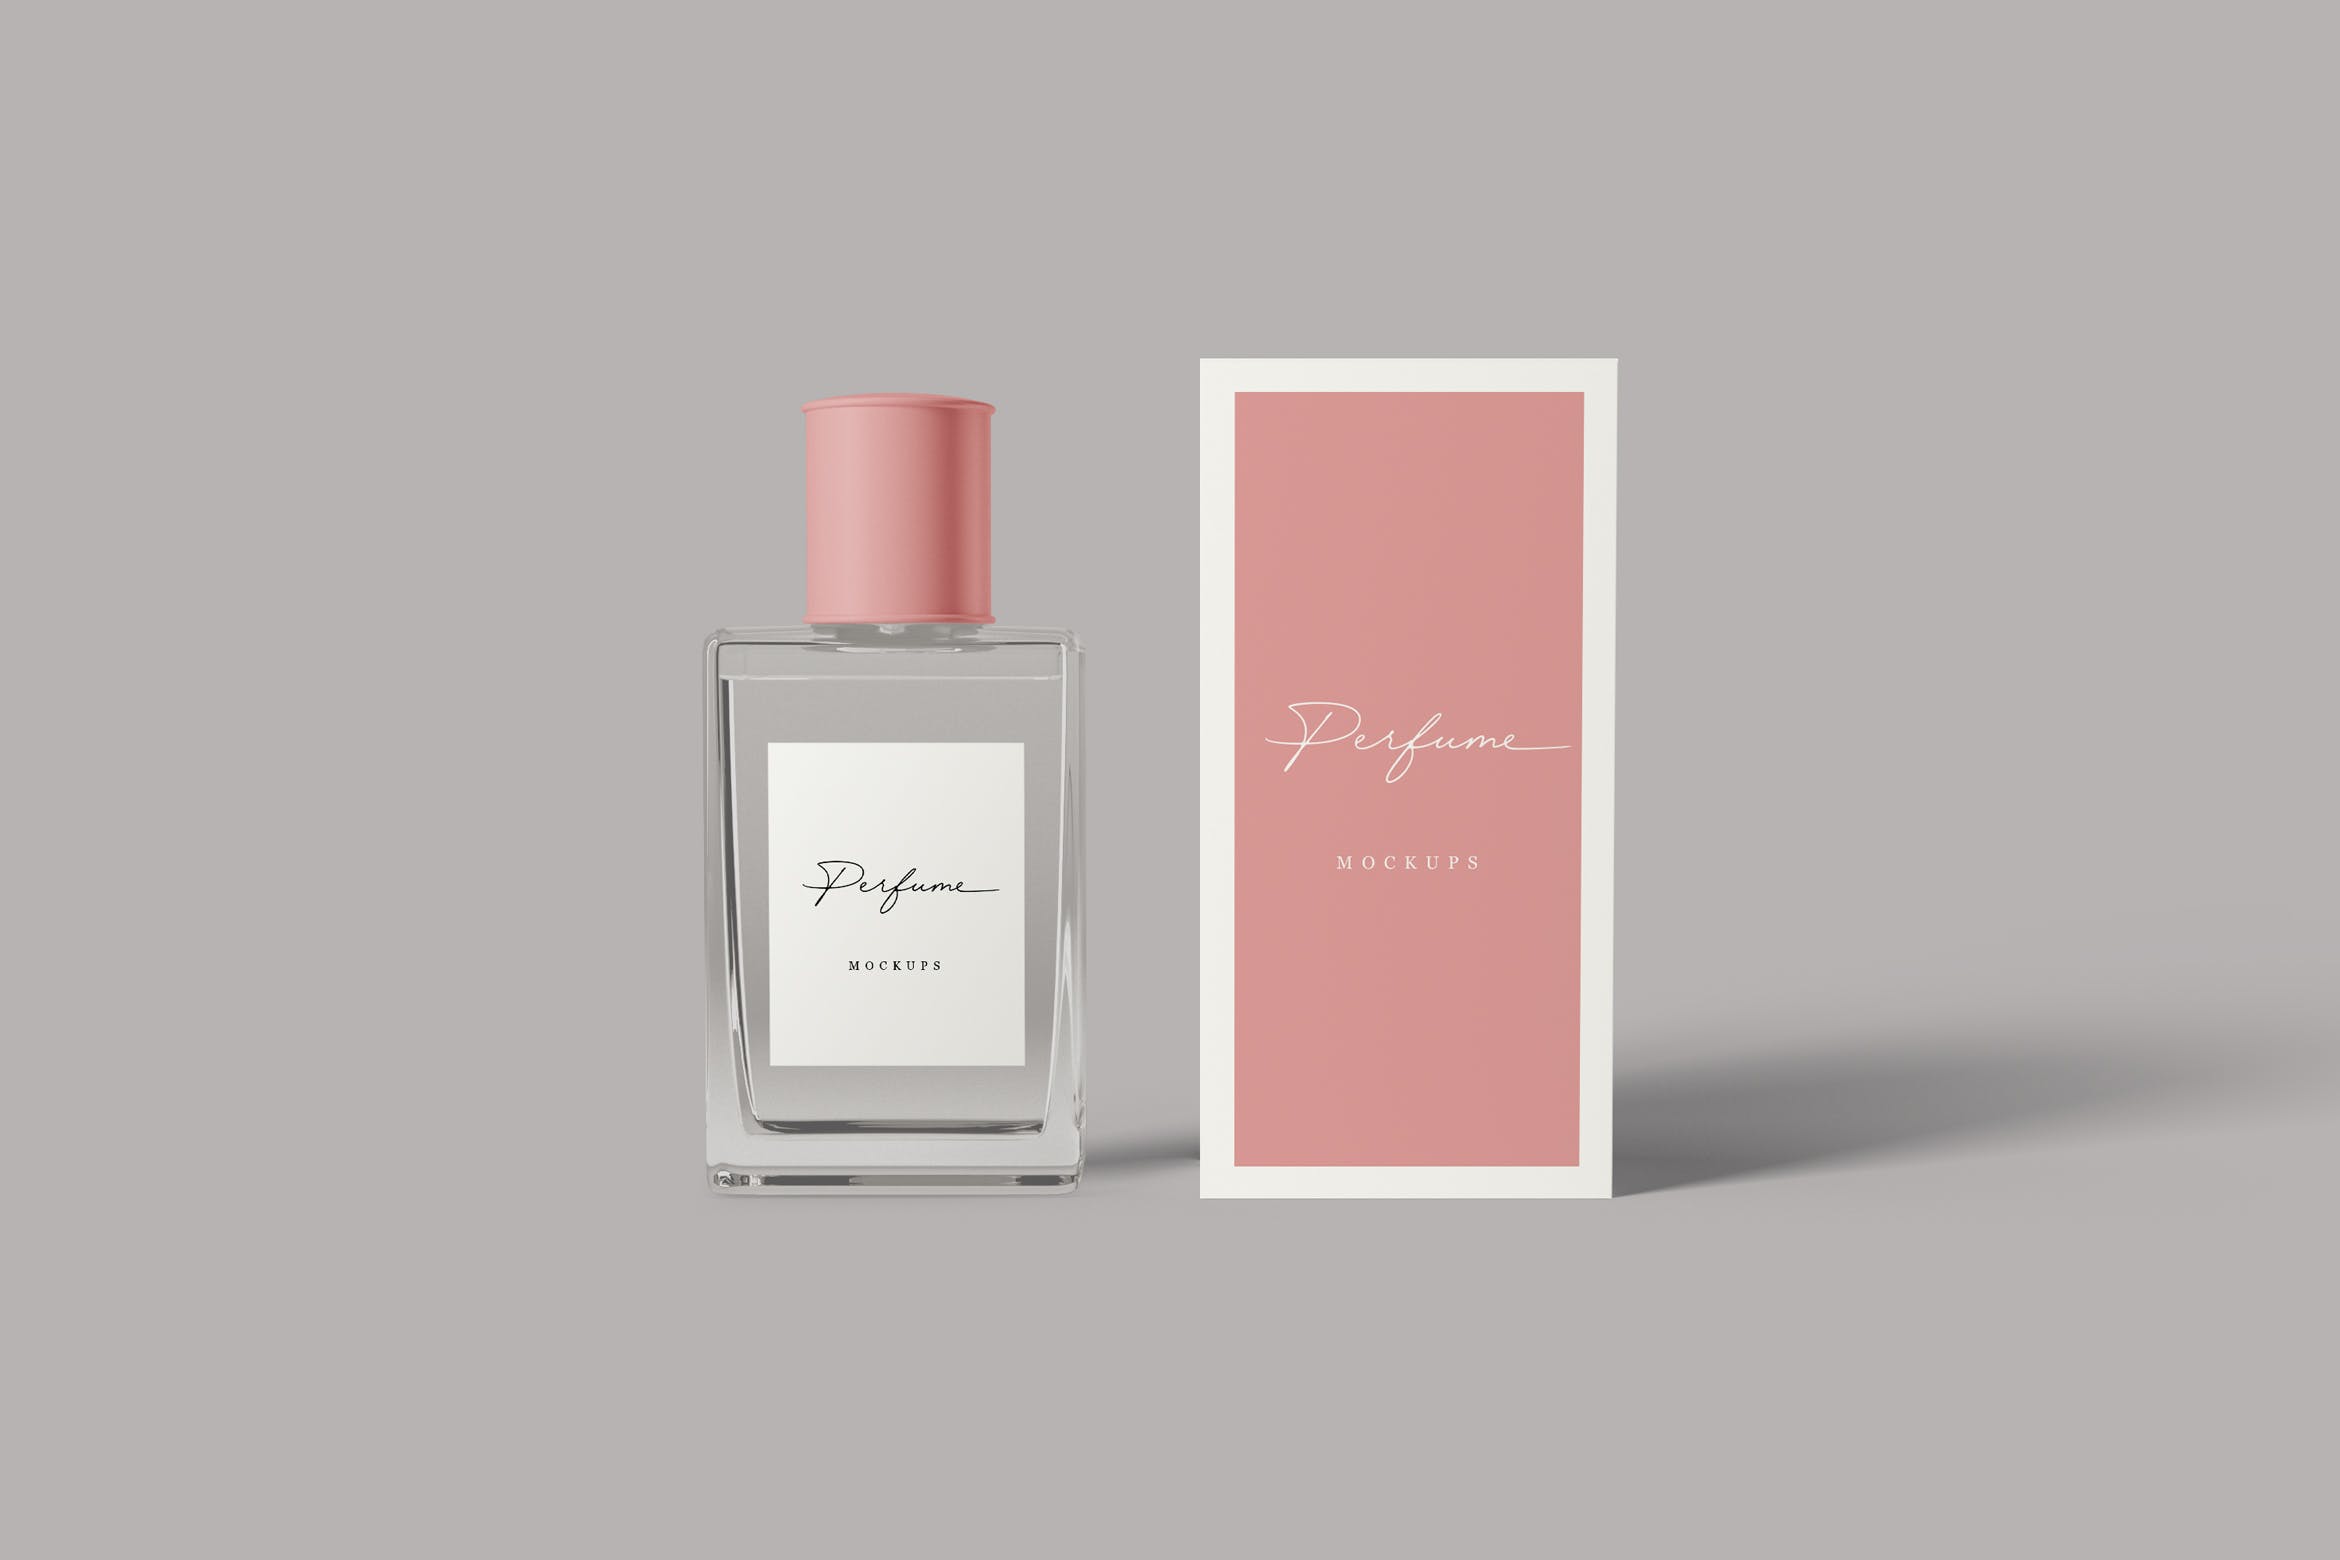 香水瓶外观设计图非凡图库精选 Perfume Mockups插图